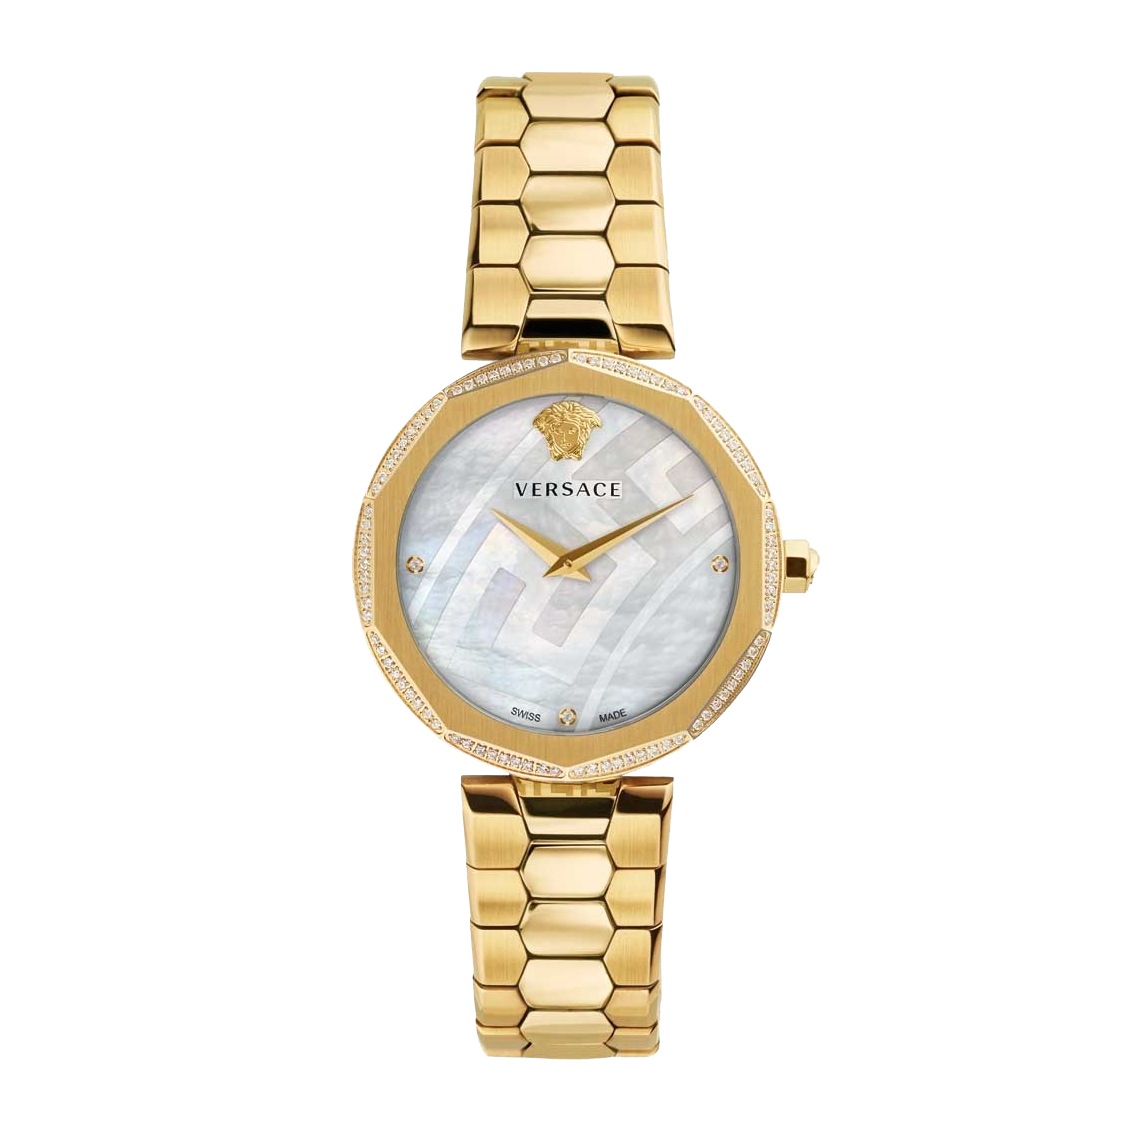 Đồng hồ Versace giá rẻ có nhiều lựa chọn đảm bảo chất lượng cao cấp.